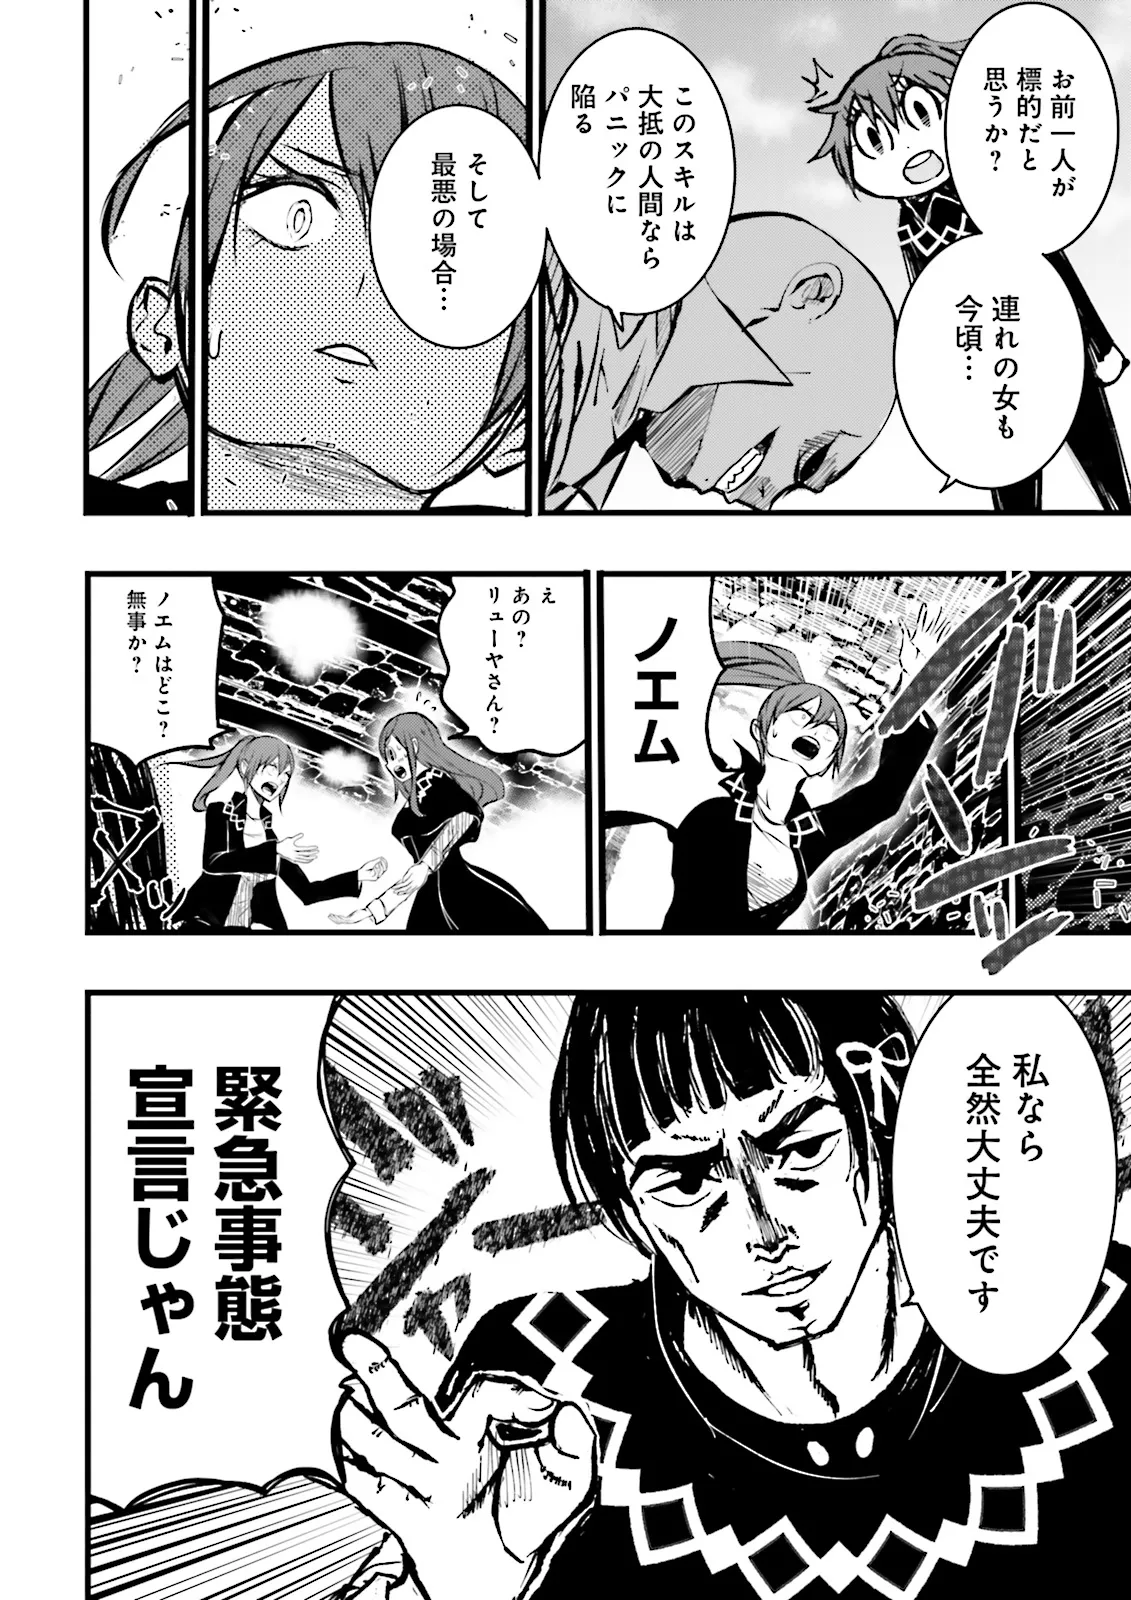 Sukiru Ga Nakereba Level wo Ageru ~ 99 Ga Kansuto No Sekai De Reberu 800 Man Kara Sutato ~ - Chapter 39.2 - Page 8